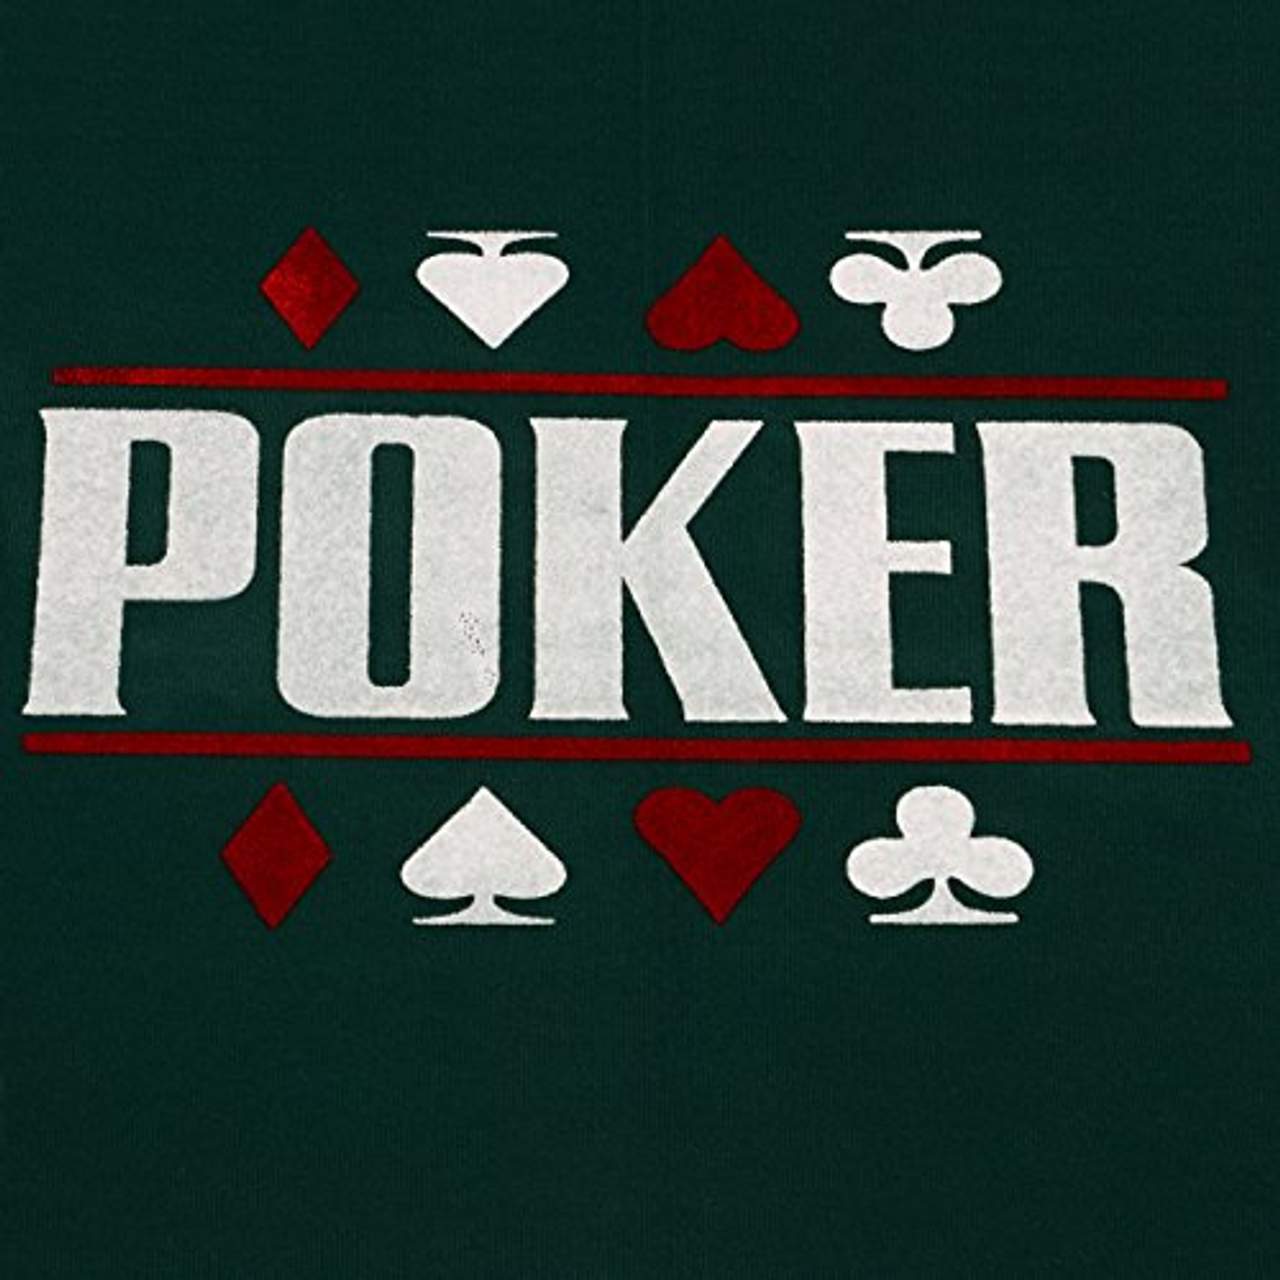 Nexos Faltbare Tischauflage Casino Pokertisch Pokerauflage